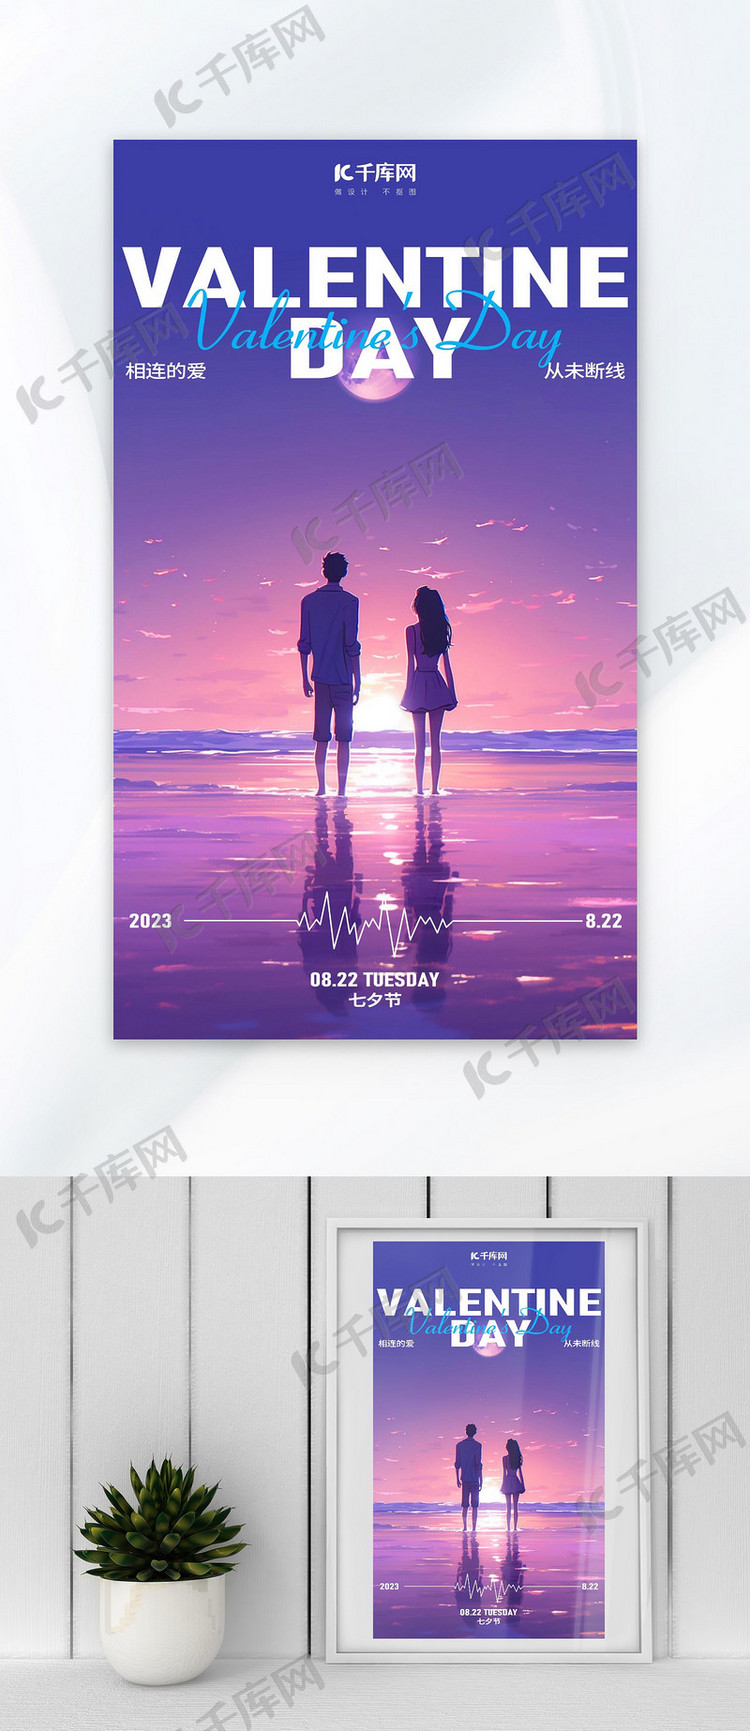 七夕节情侣海边蓝紫色AI插画广告宣传海报